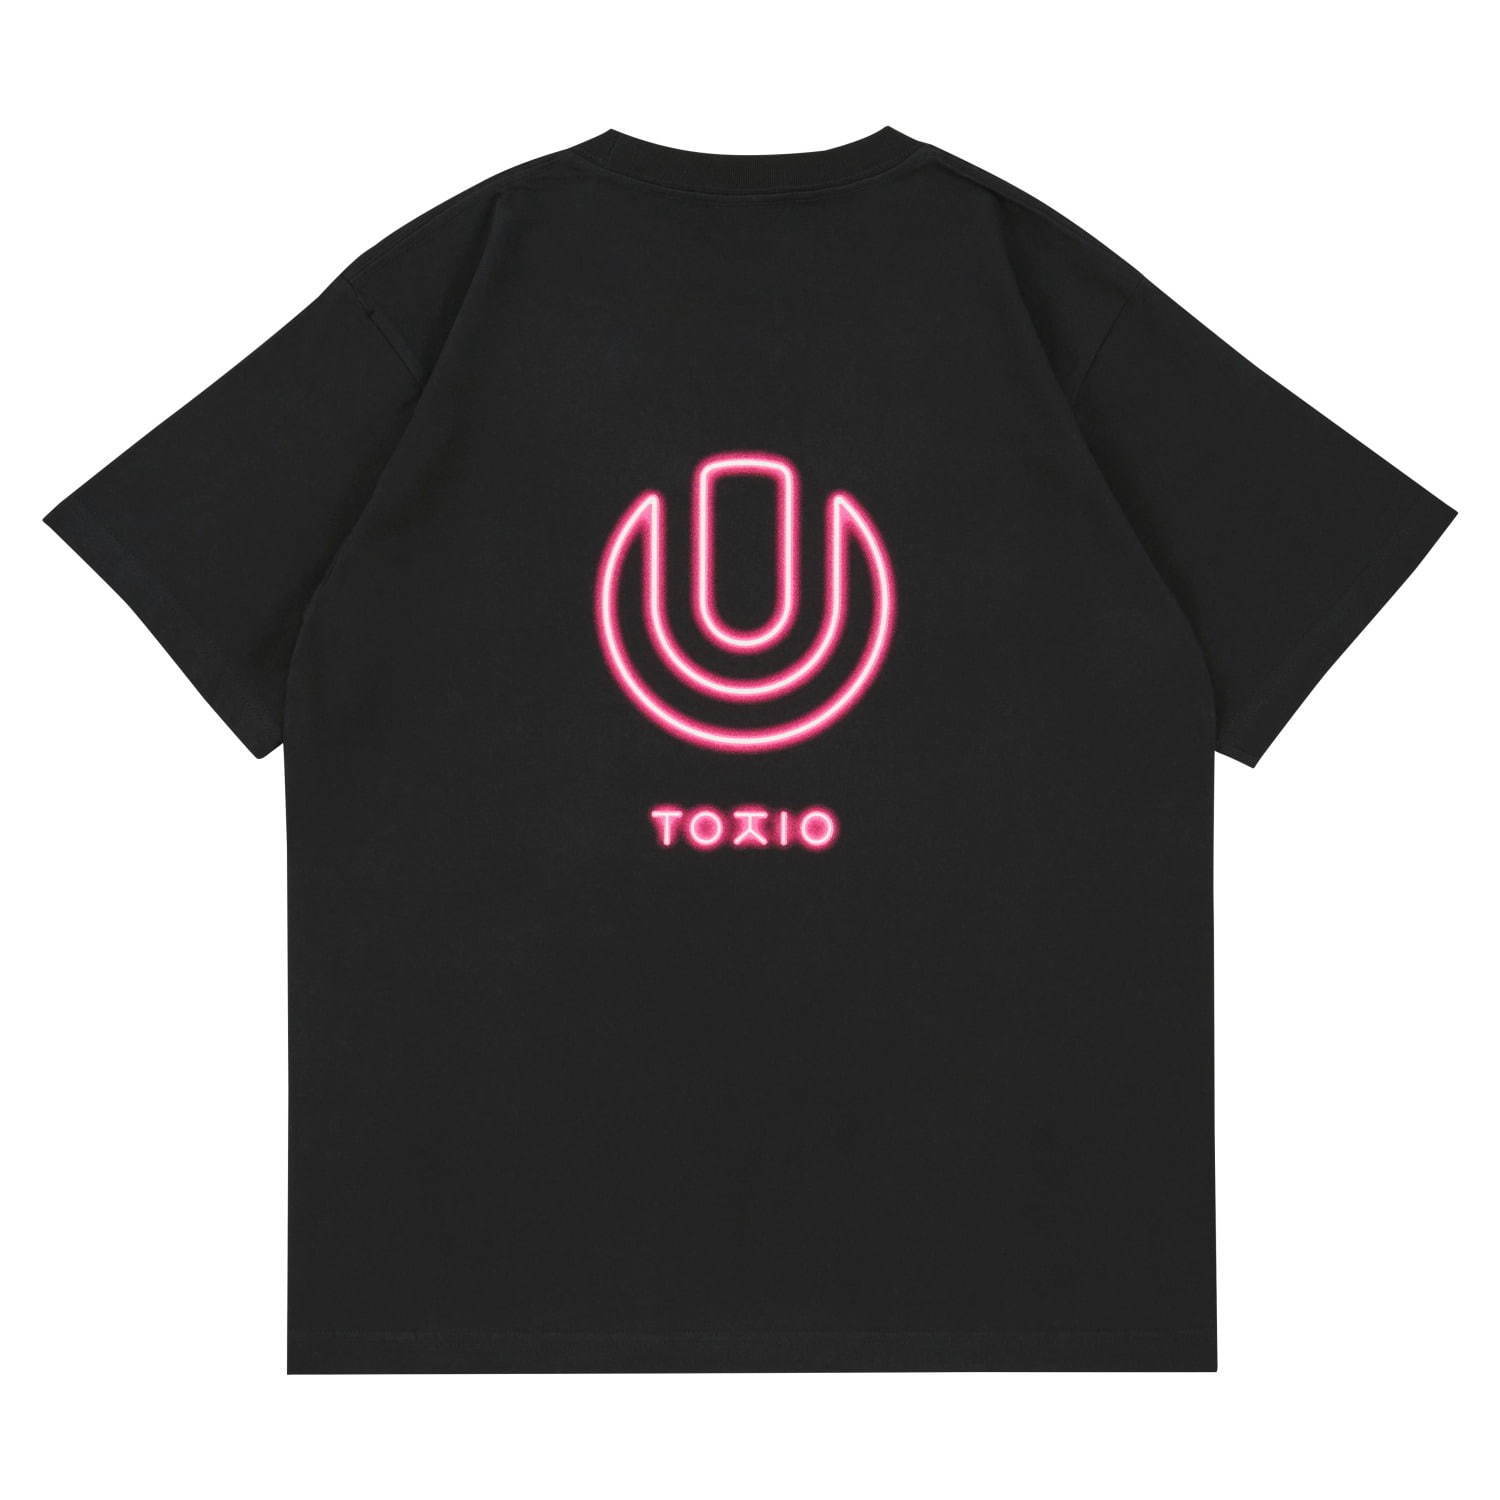 ULTRA JAPAN Neon Tシャツ 4,800円(税込)